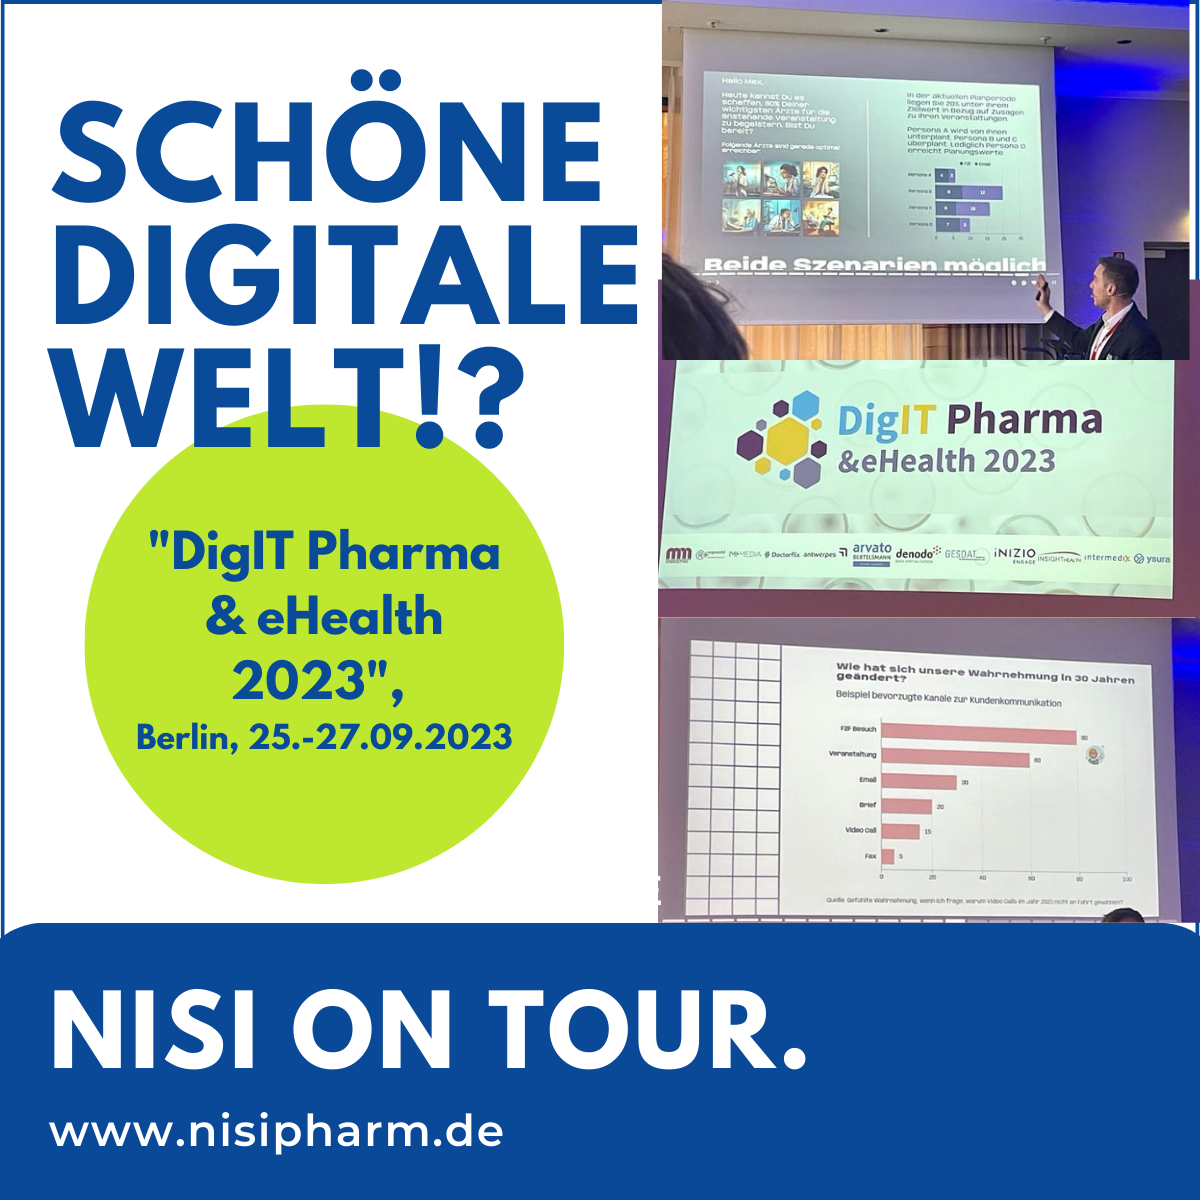 Postbild zum Kongress "DigIT Pharma & eHealth 2023", Berlin, 25.-27.09.2023, Headline: Schöne Heile Welt?!